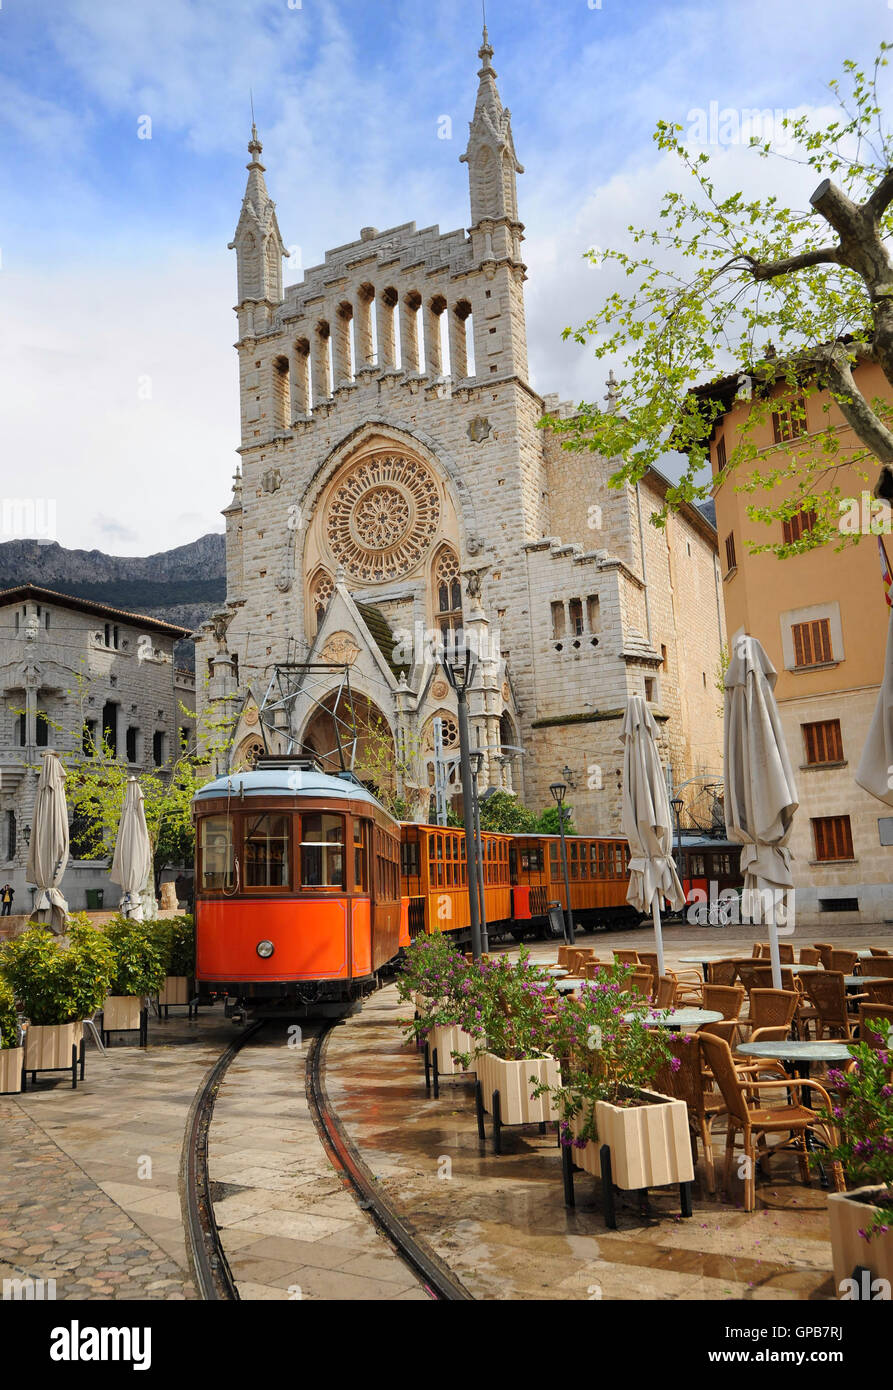 Vieux tram en centre-ville de Soller en face de la cathédrale gothique médiéval avec grande rosace, Mallorca, Espagne Banque D'Images